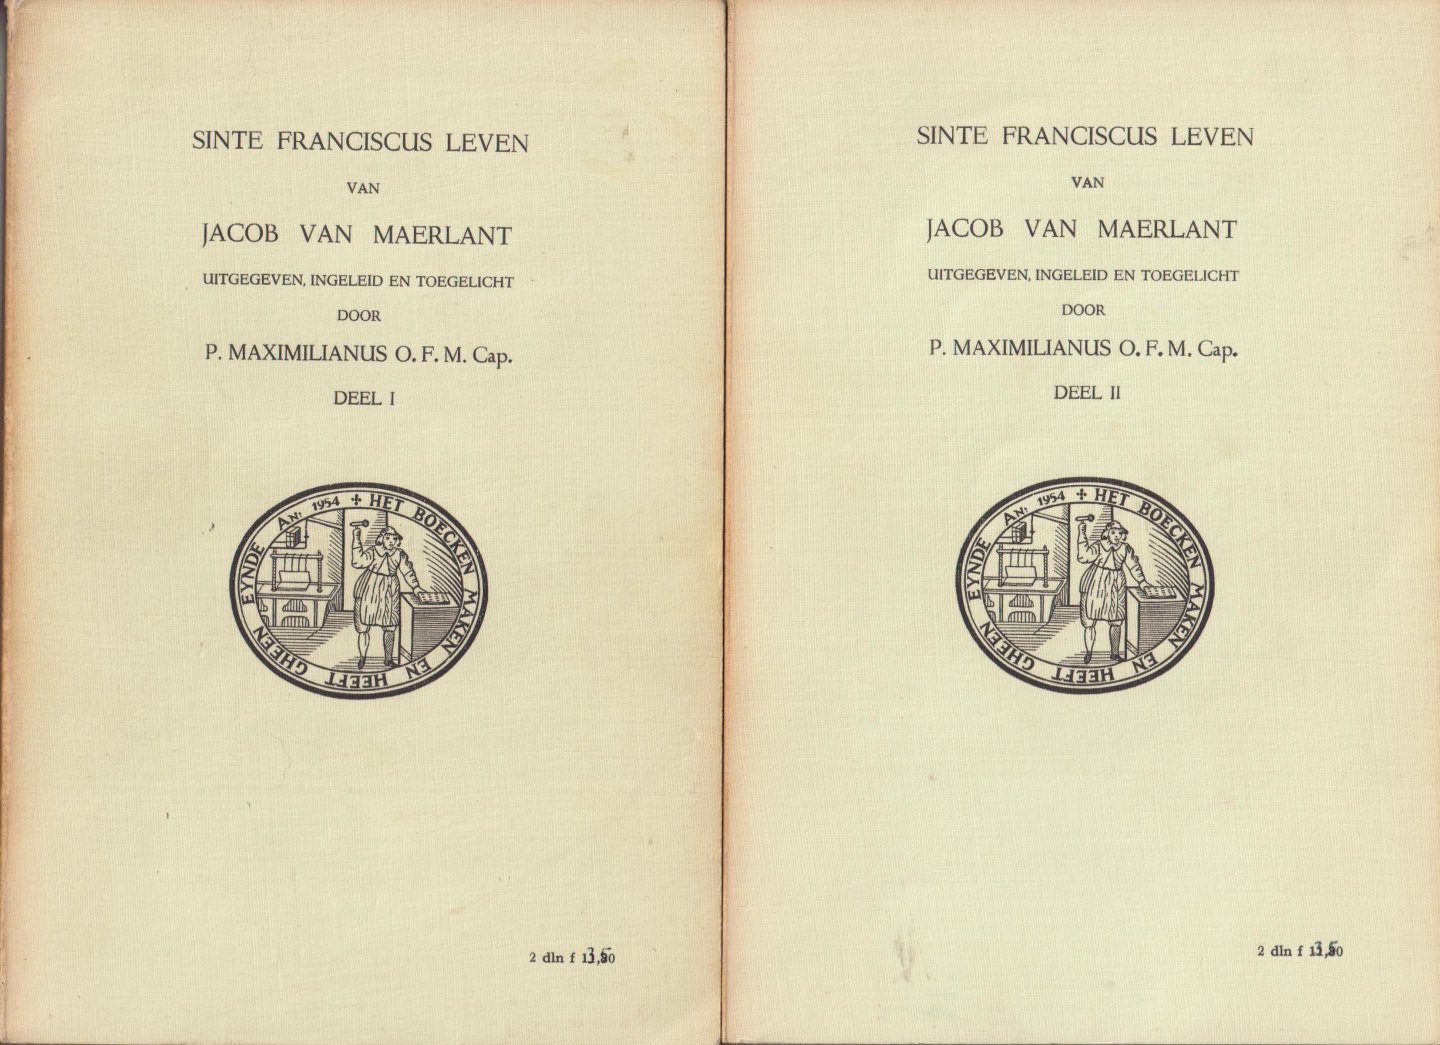 Maerlant (Brugse Vrije, ca. 1235 – ca. 1300), Jacob van - Sinte Franciscus leven van Jacob van Maerlant. Uitgegeven, ingeleid en toegelicht door P. Maximilianus O.F.M. Cap. Deel I en Deel II Compleet